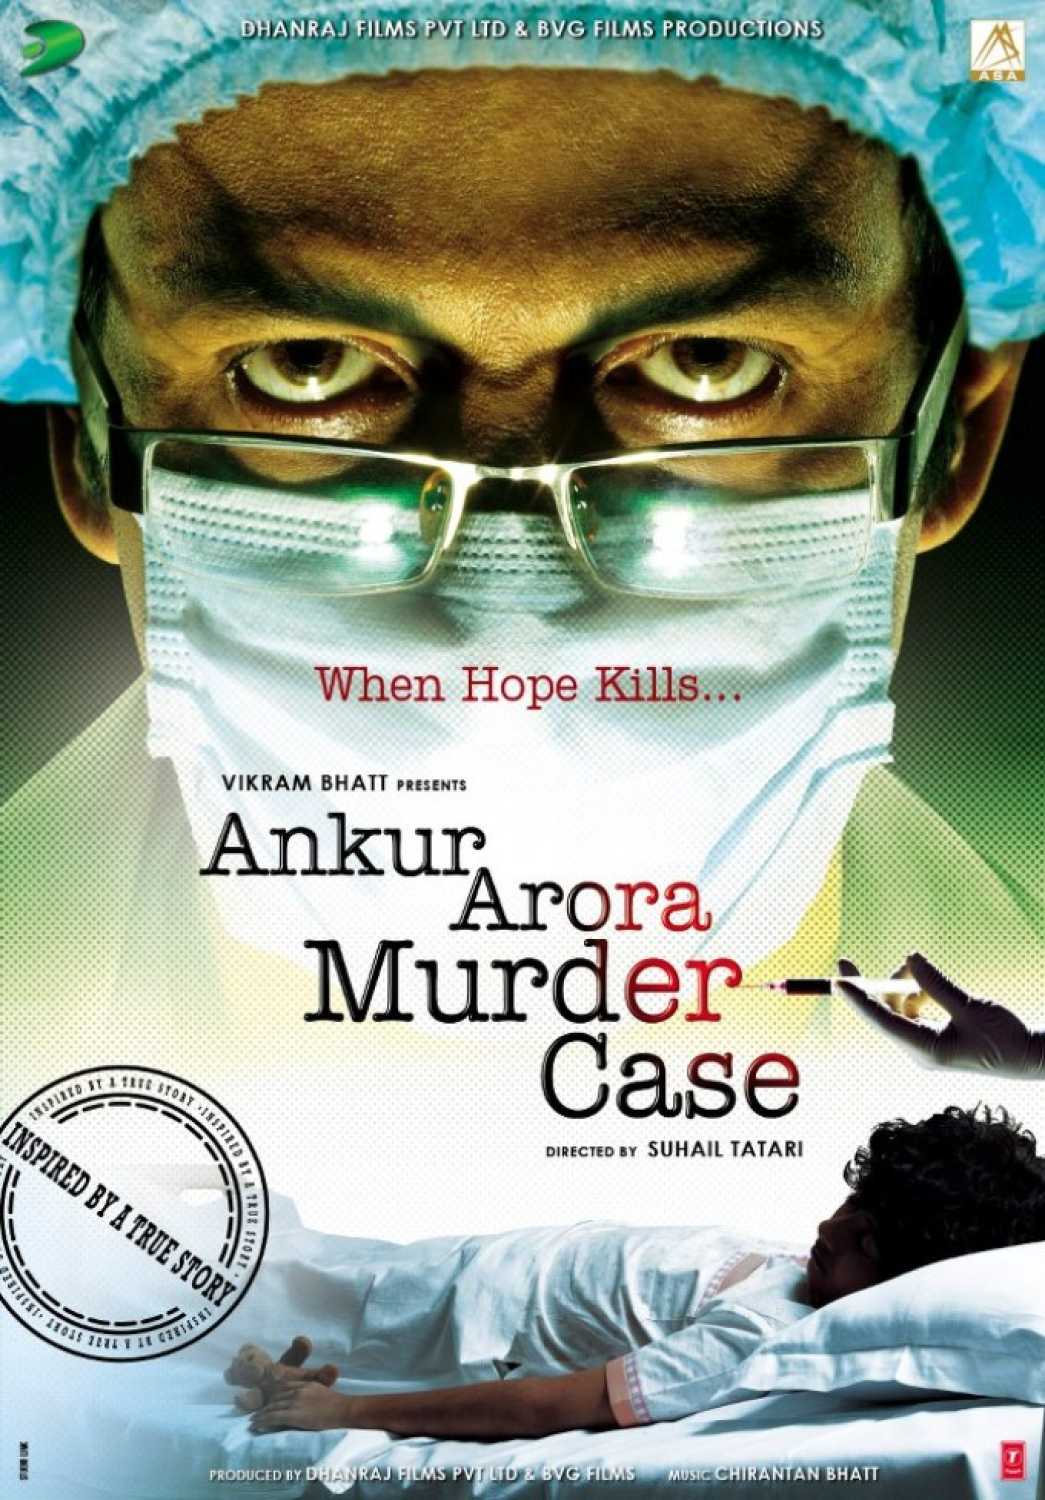 ANKUR ARORA MURDER CASE